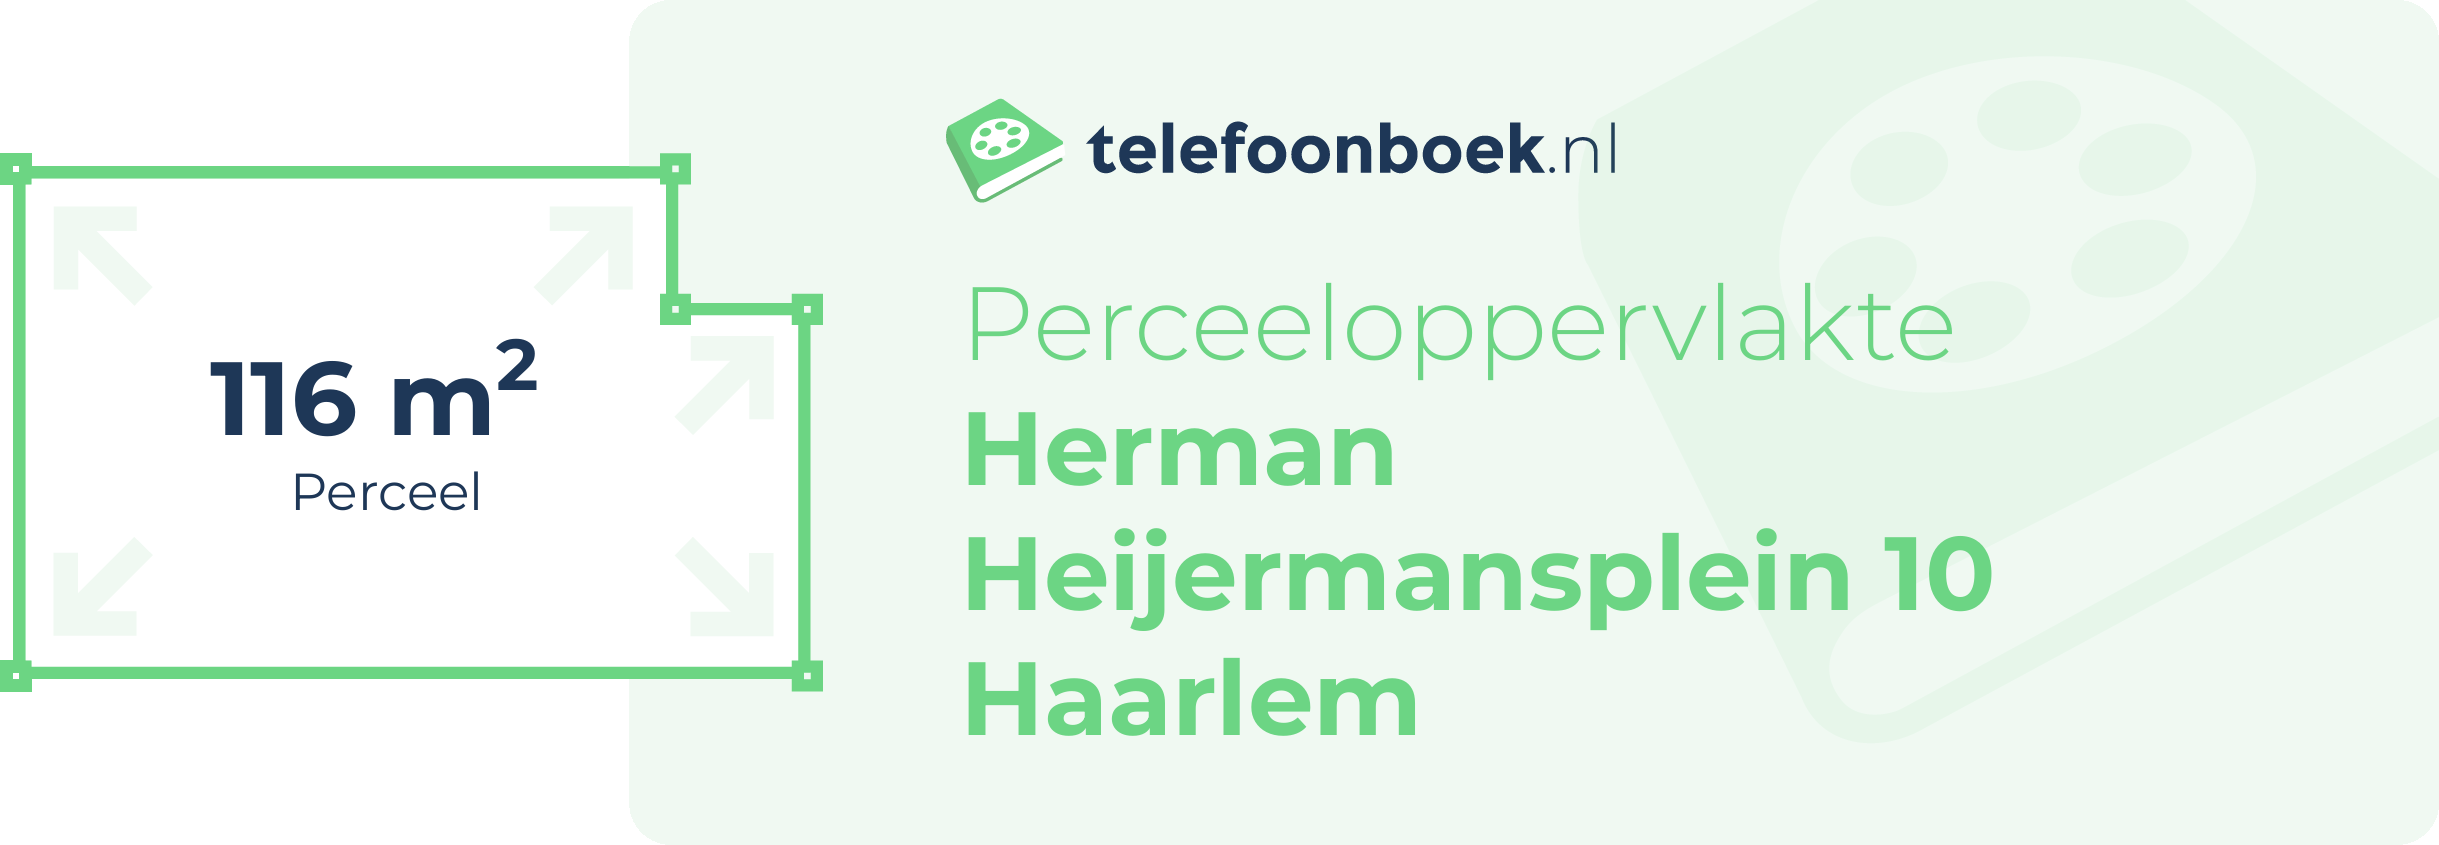 Perceeloppervlakte Herman Heijermansplein 10 Haarlem